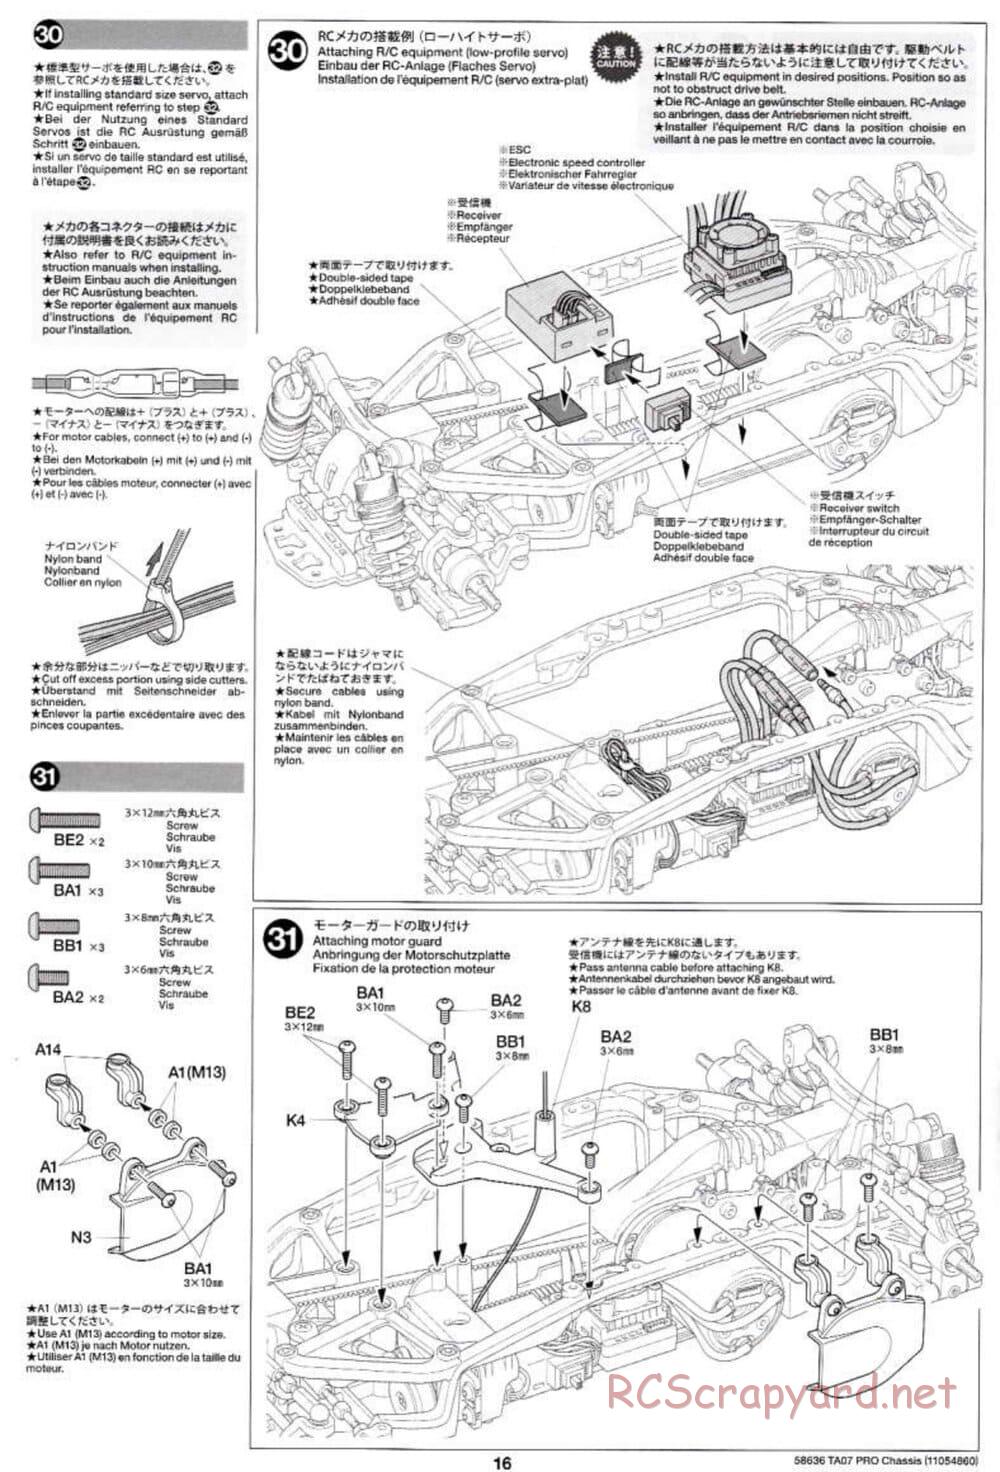 Tamiya - TA07 Pro Chassis - Manual - Page 16